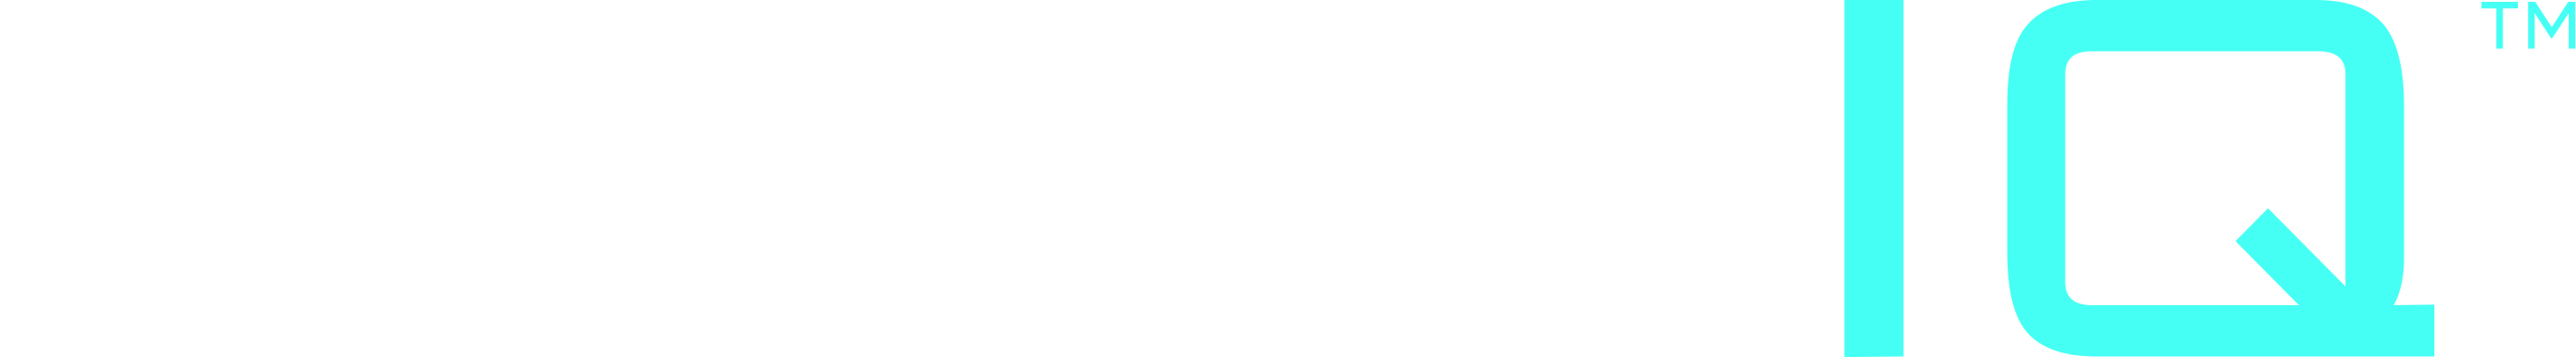 Publiq logo